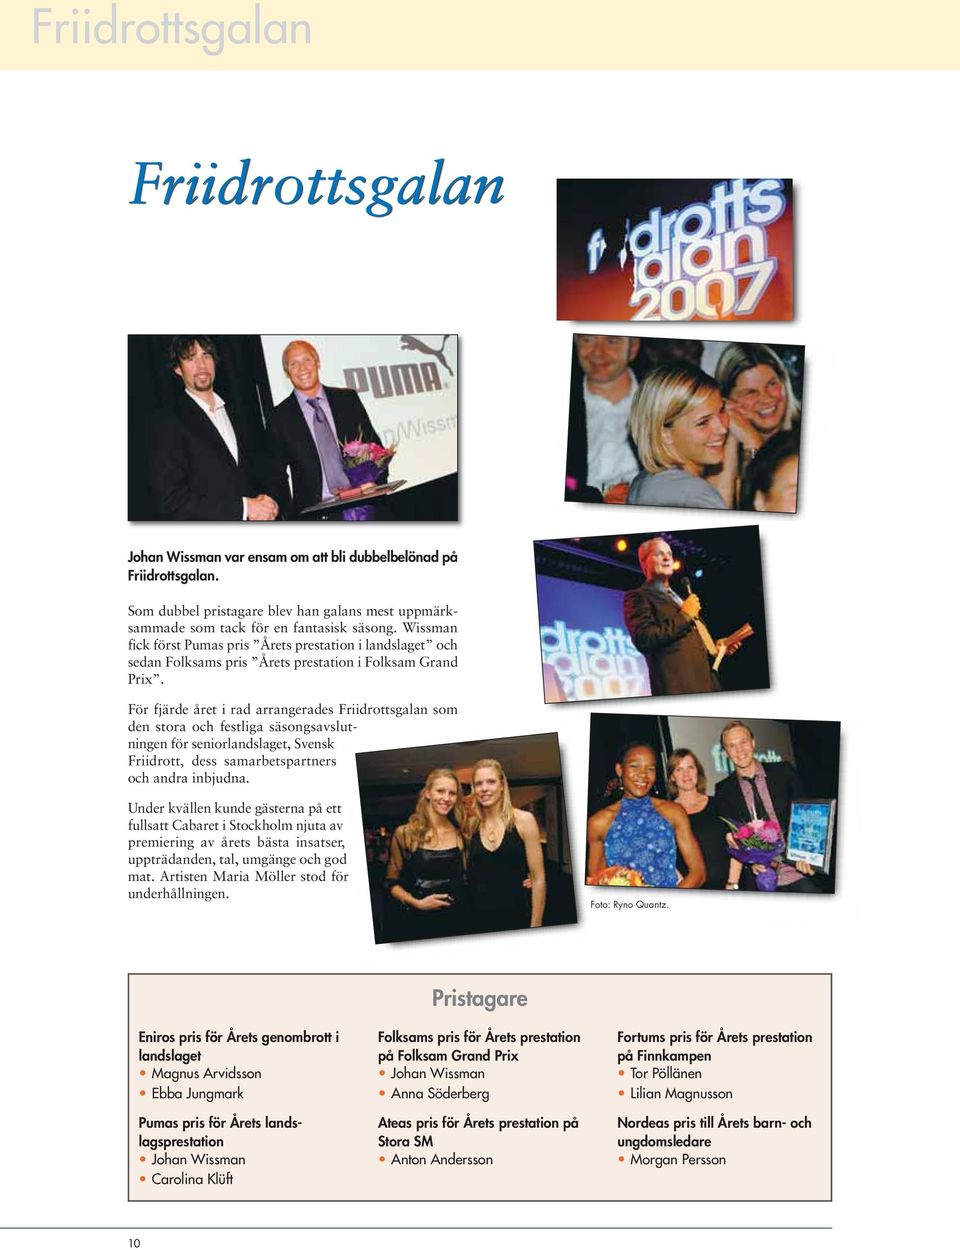 För fjärde året i rad arrangerades Friidrottsgalan som den stora och festliga säsongsavslutningen för seniorlandslaget, Svensk Friidrott, dess samarbetspartners och andra inbjudna.